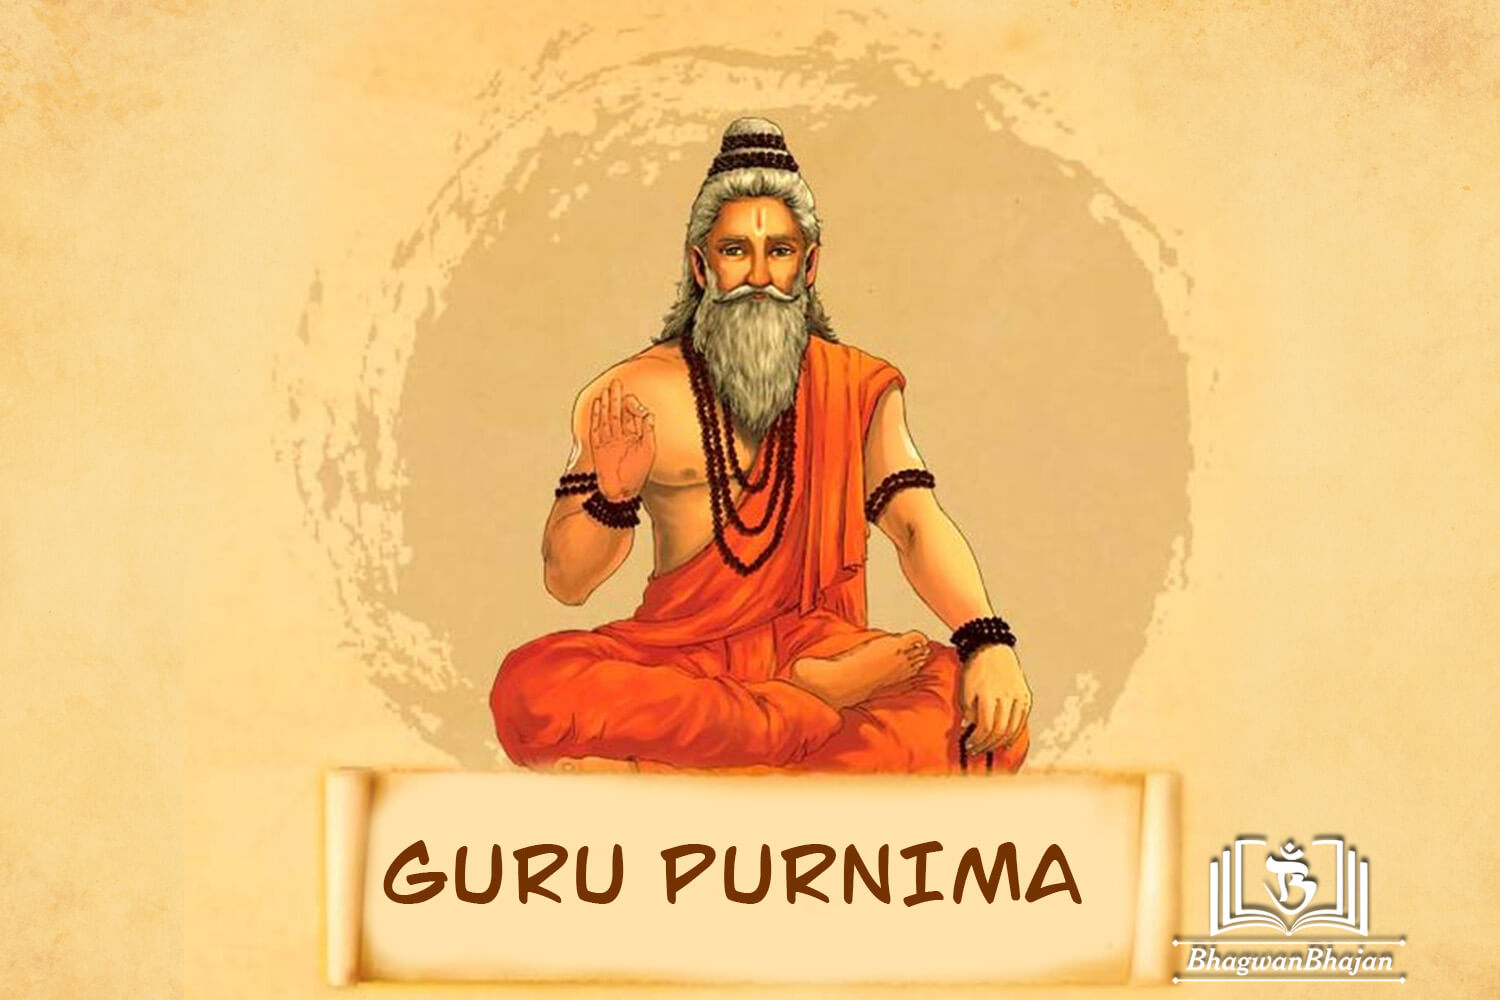 Index of /festivals/guru-purnima/guru-purnima-hd-wallpaper